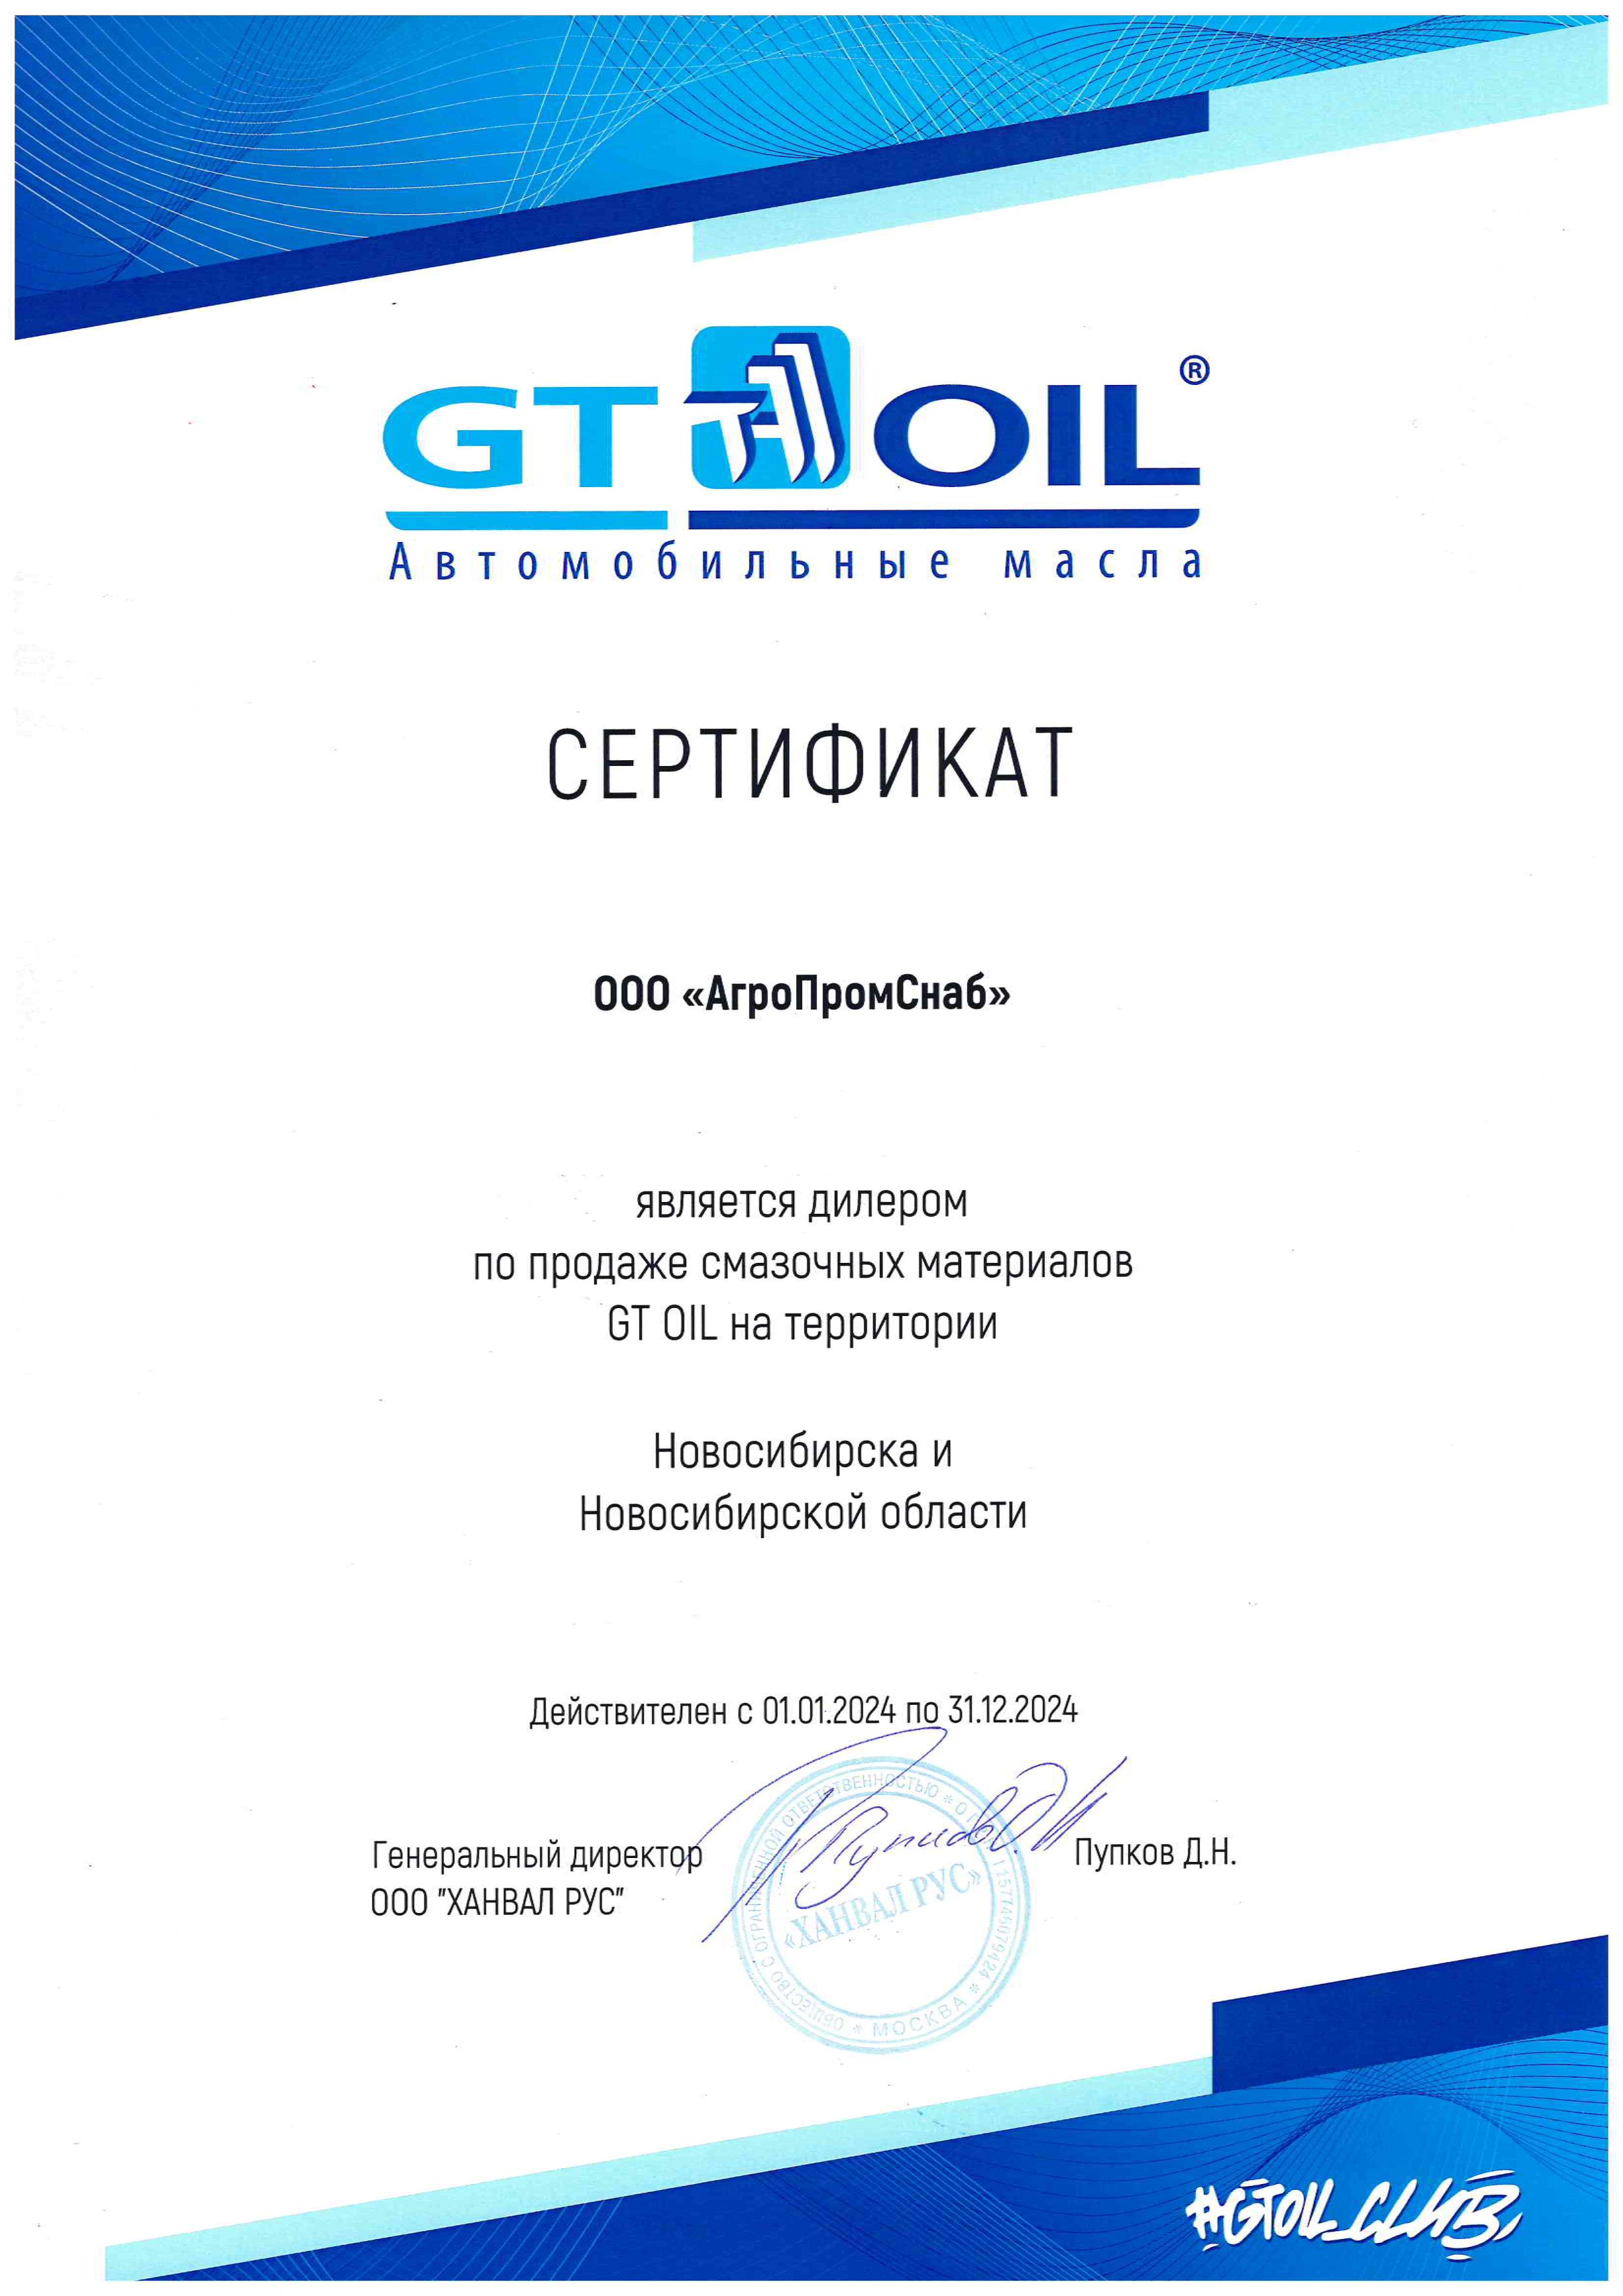 GT Oil - Новосибирская область